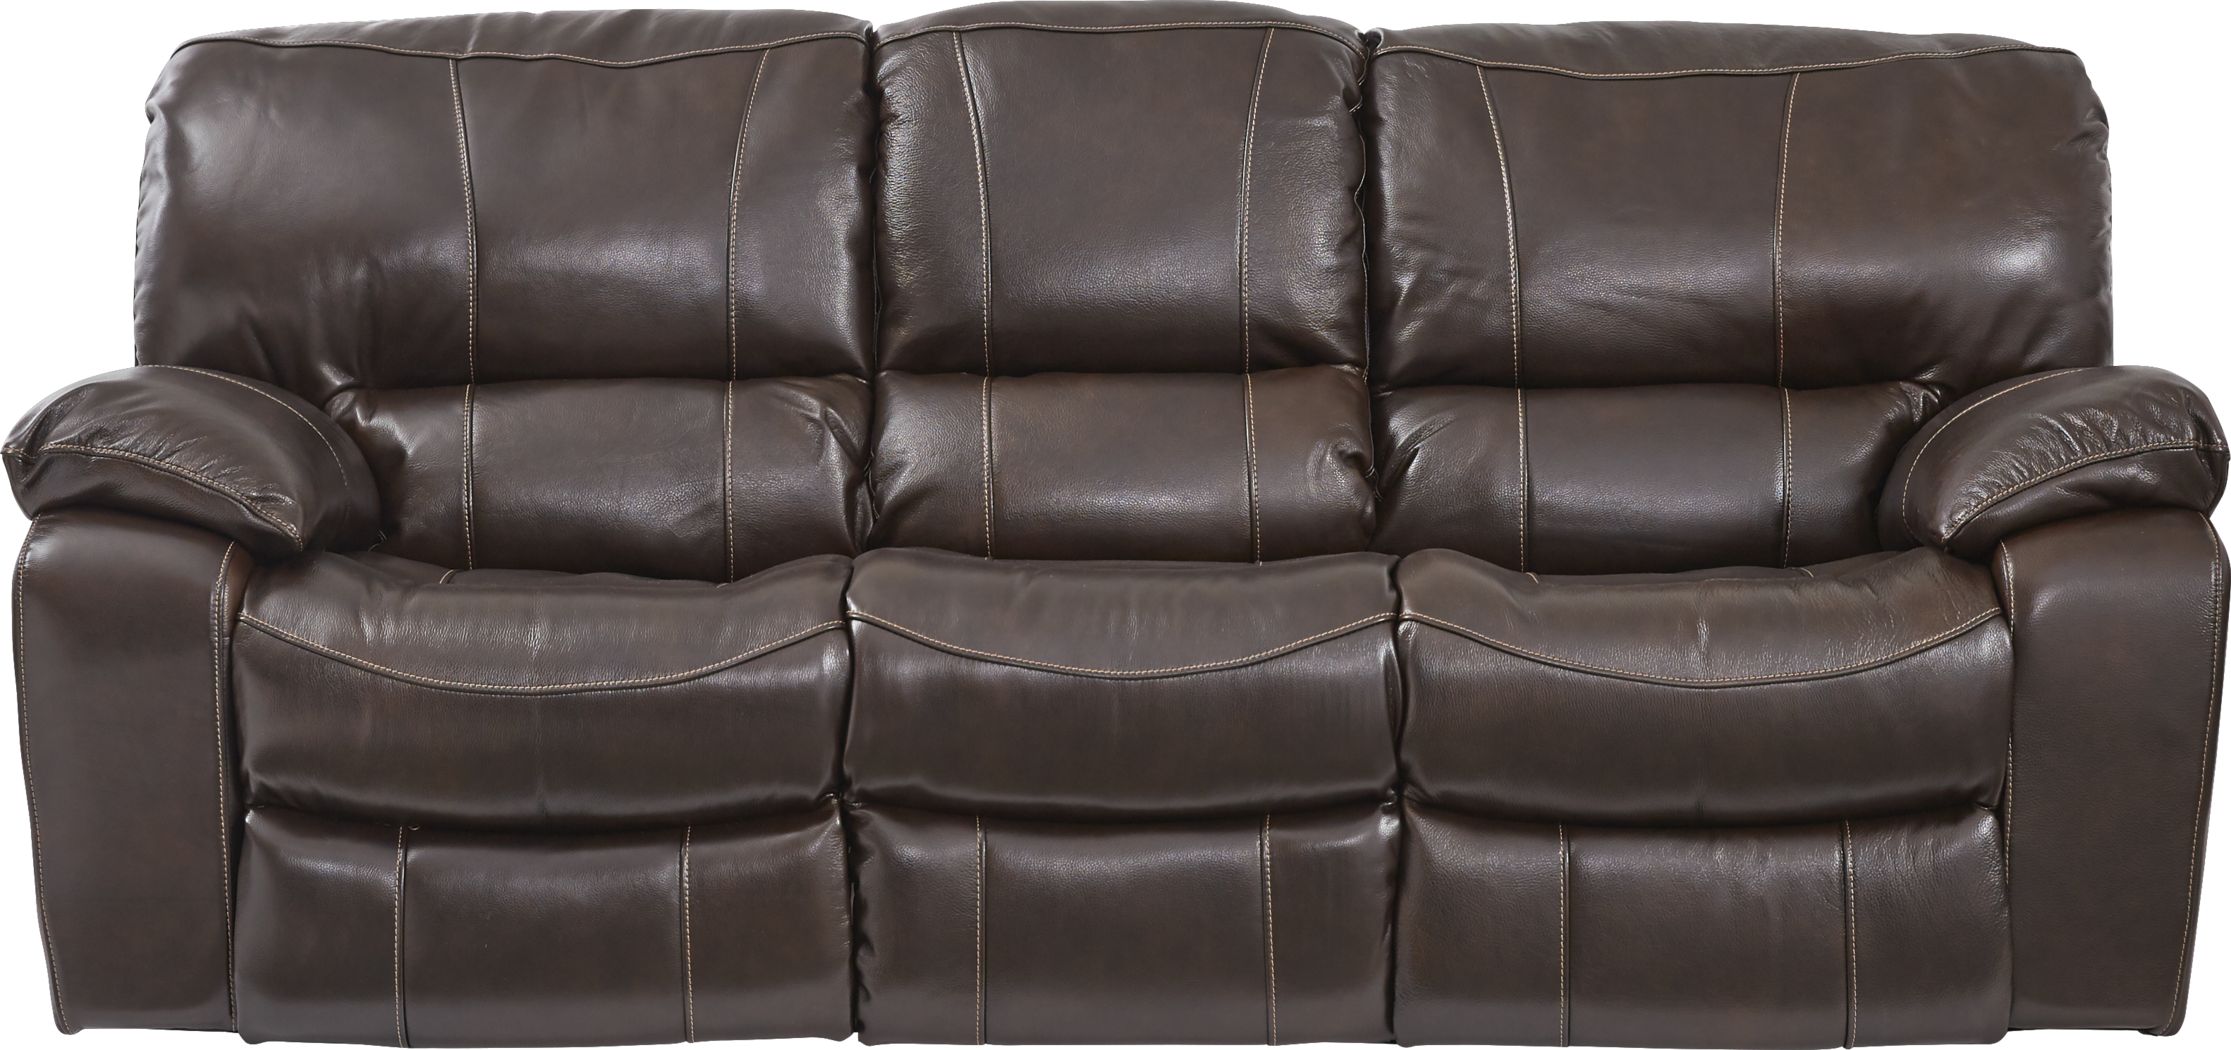 sanderson mahogany leather reclining sofa